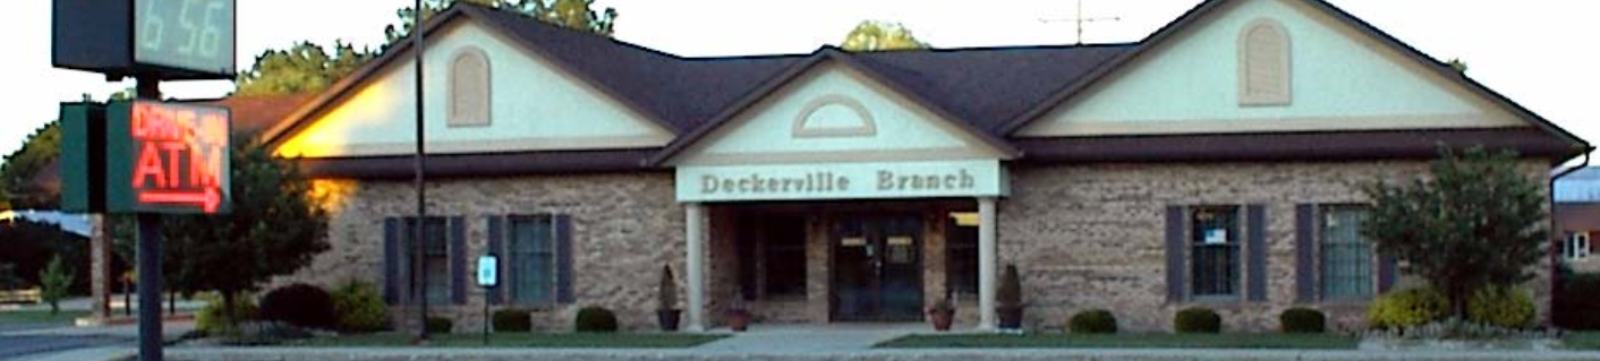 Deckerville branch